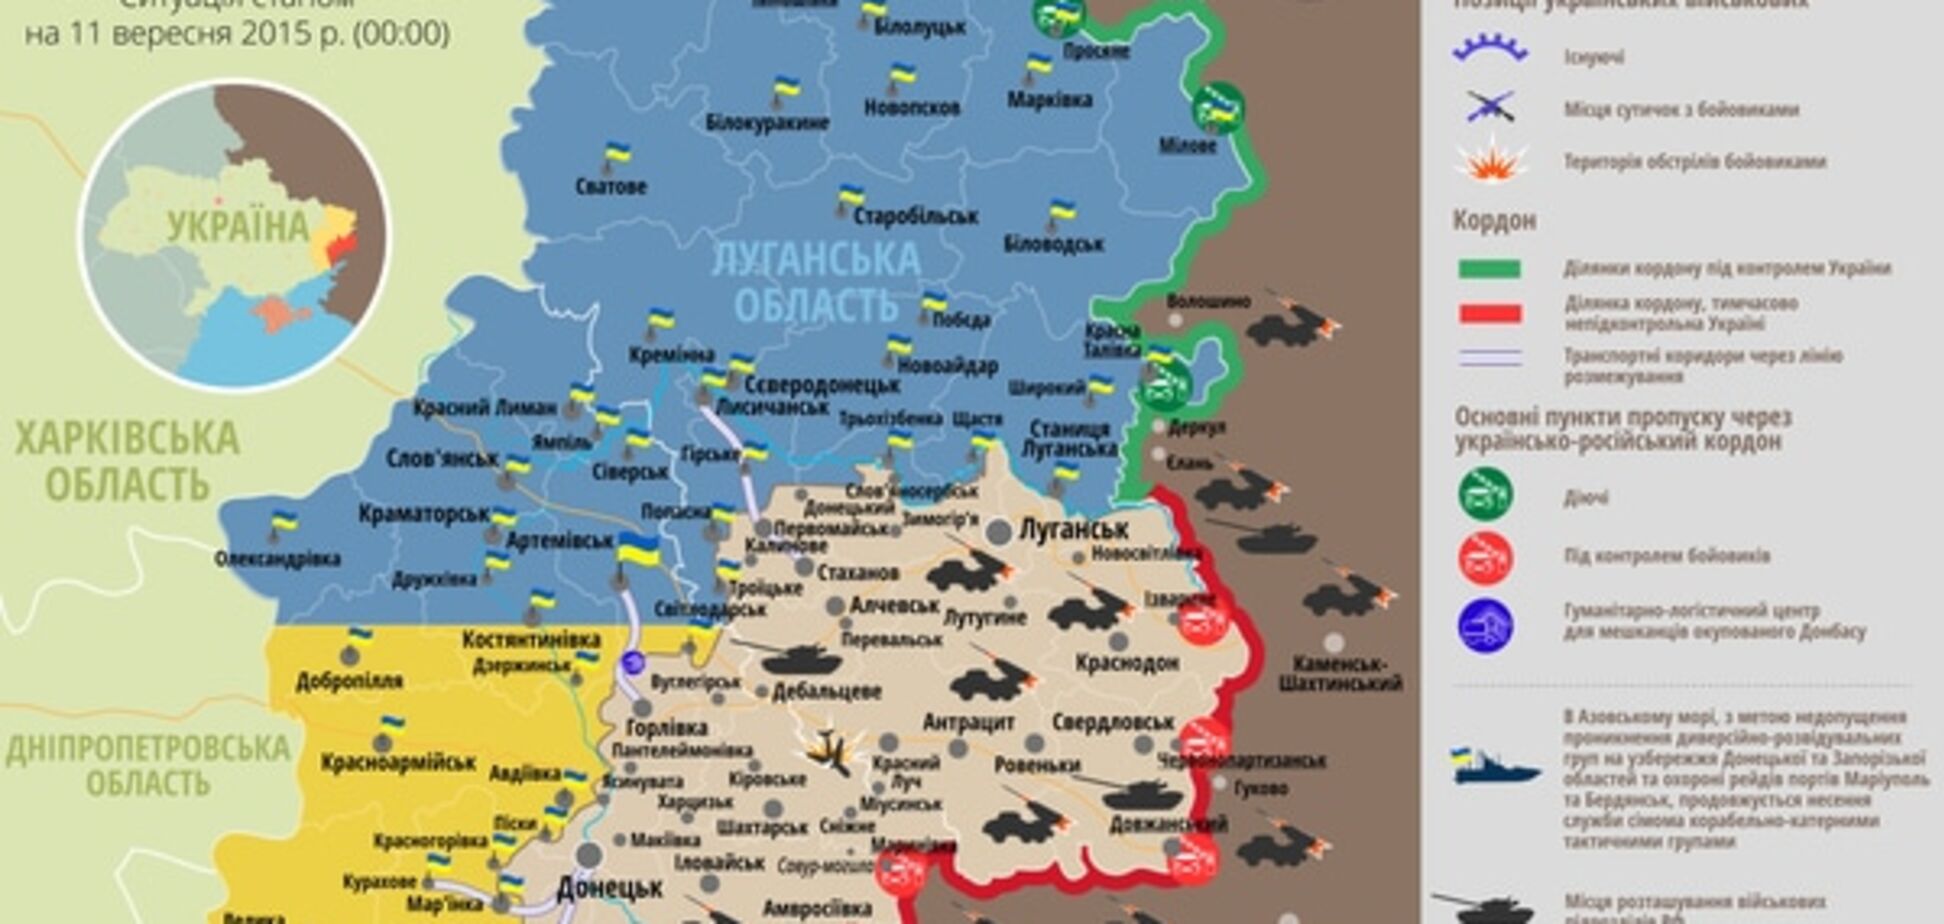 Пiд час затишшя на Донбасі загинуло двоє українських бійців: опублікована карта АТО